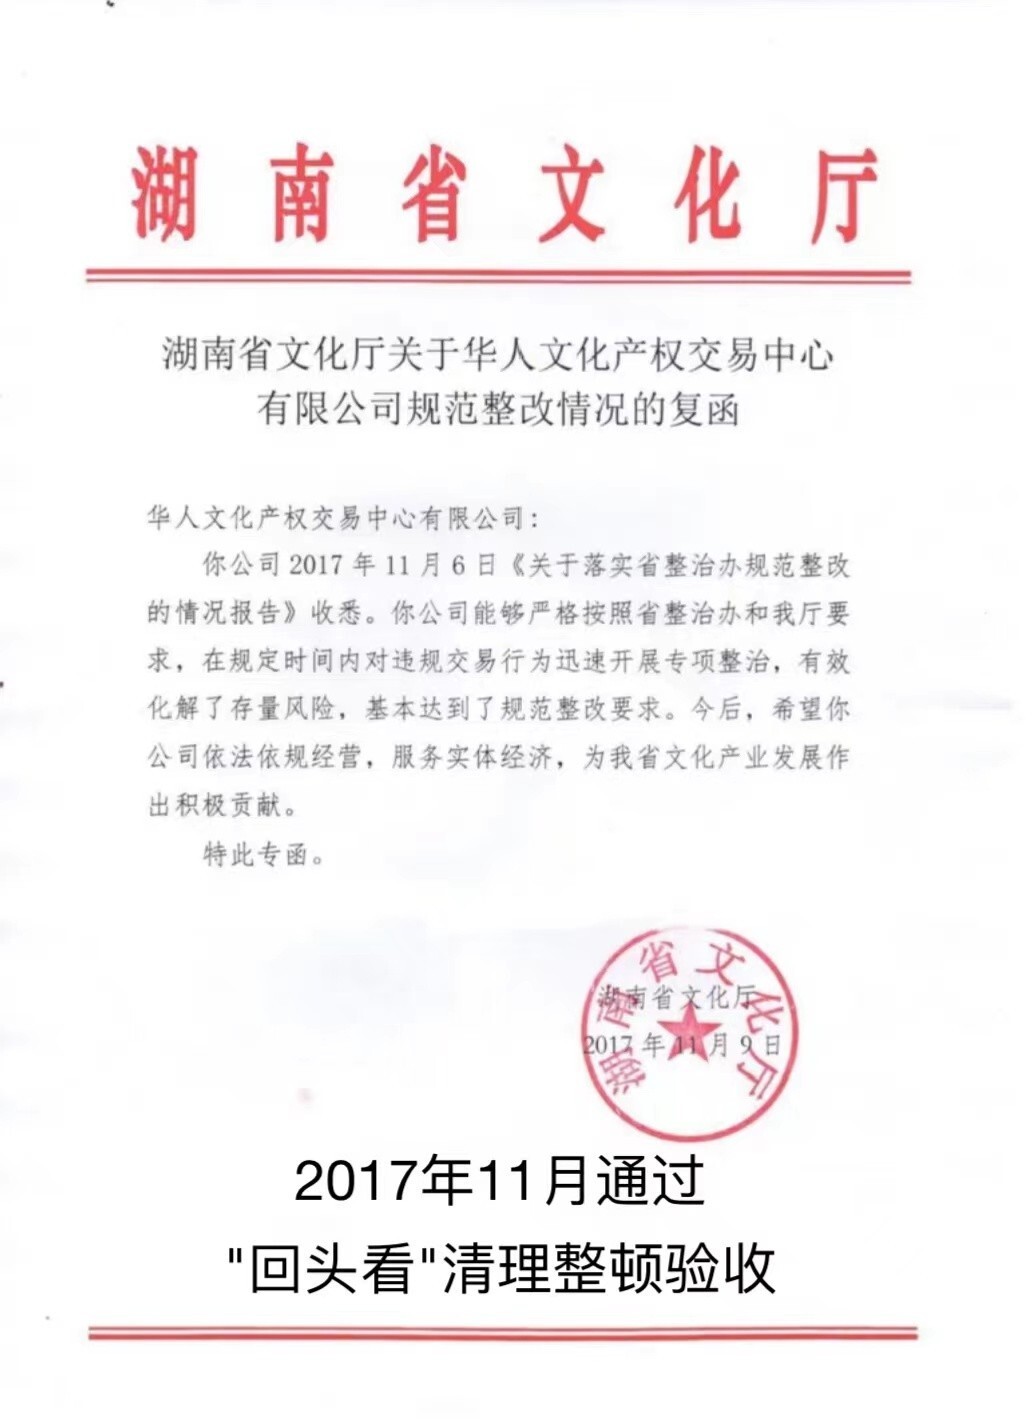 热烈祝贺《诺亚数商》和《数藏中国》正式成为华人数商二级交易市场第一梯队的白名单